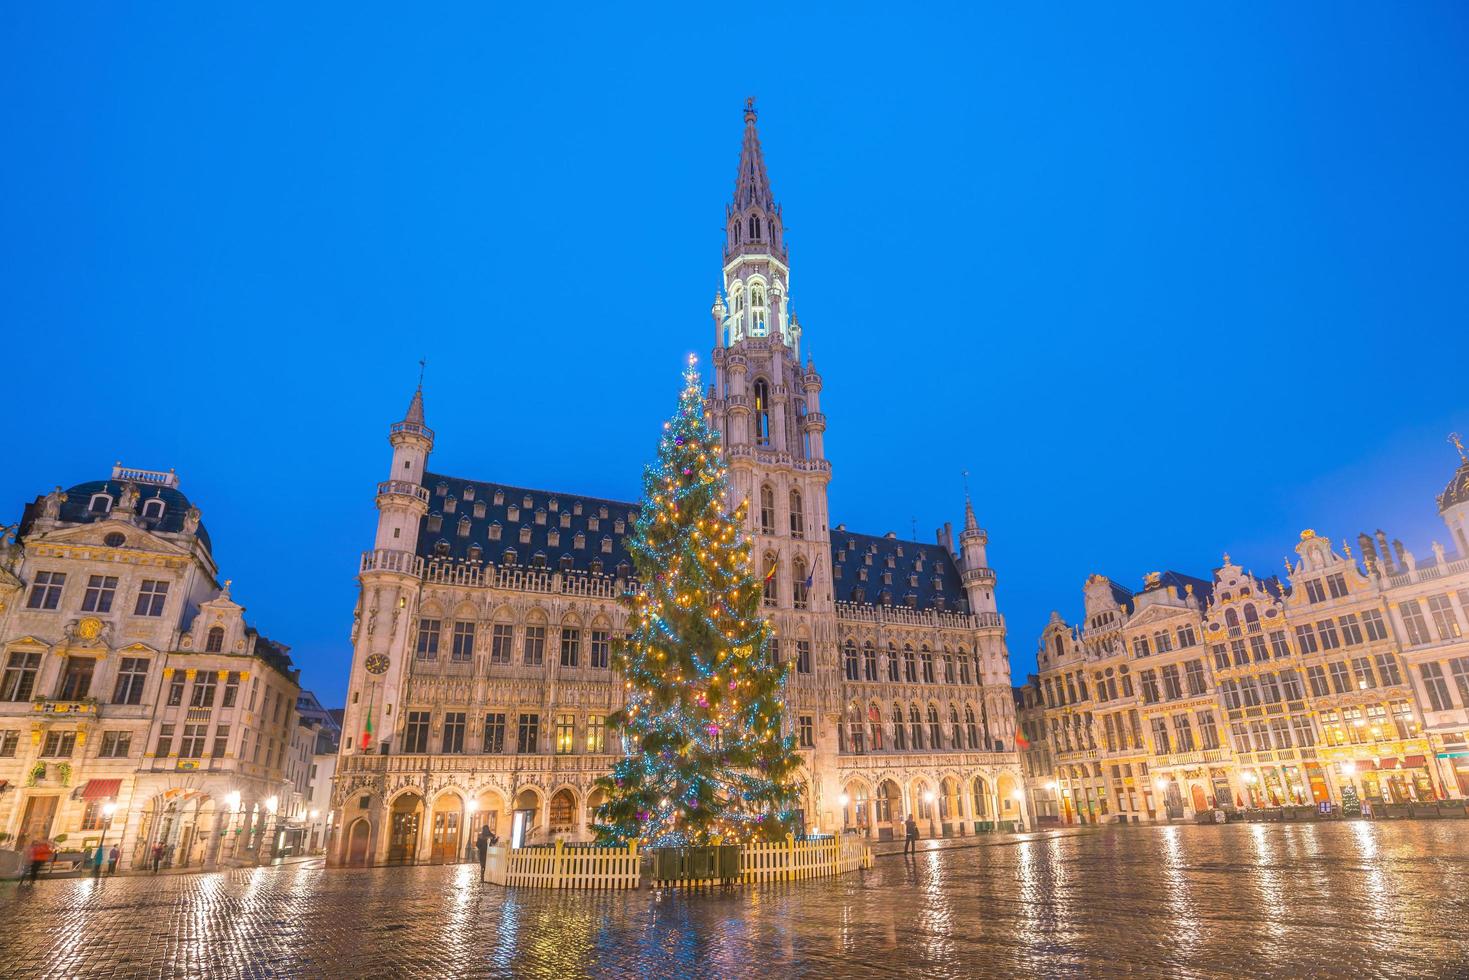 La grande place de la vieille ville de Bruxelles, Belgique photo